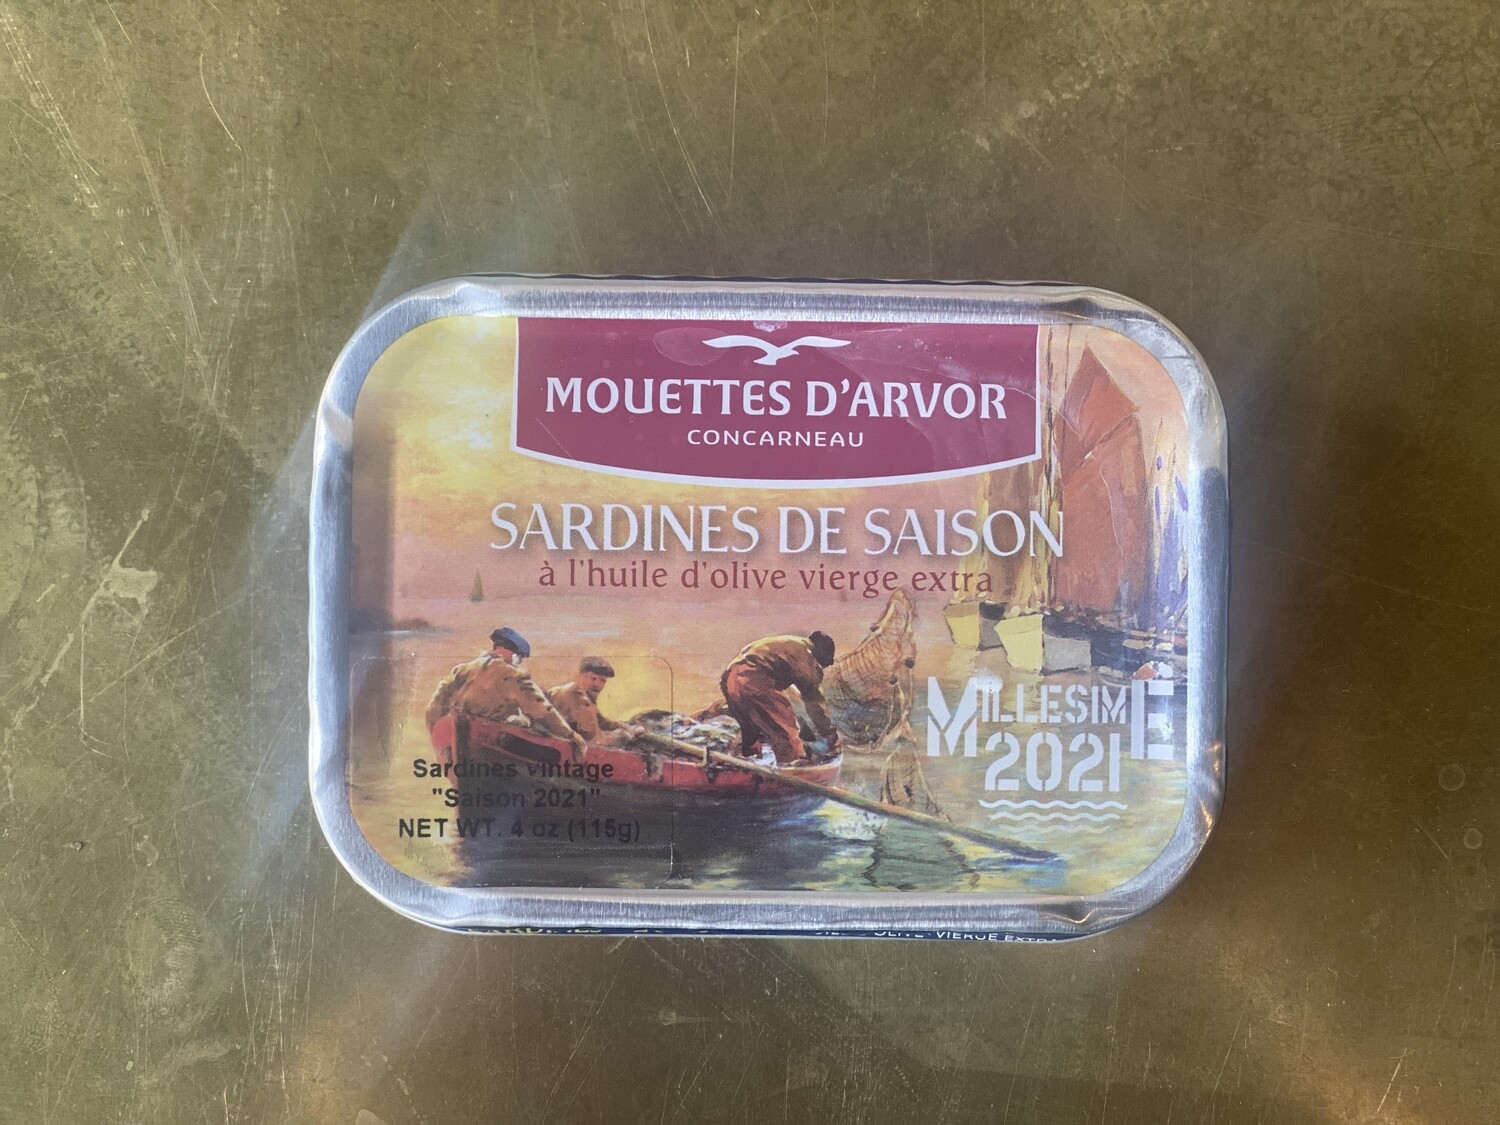 Les Mouettes d'Arvor Sardines Vintage 2021 Season (Saison)